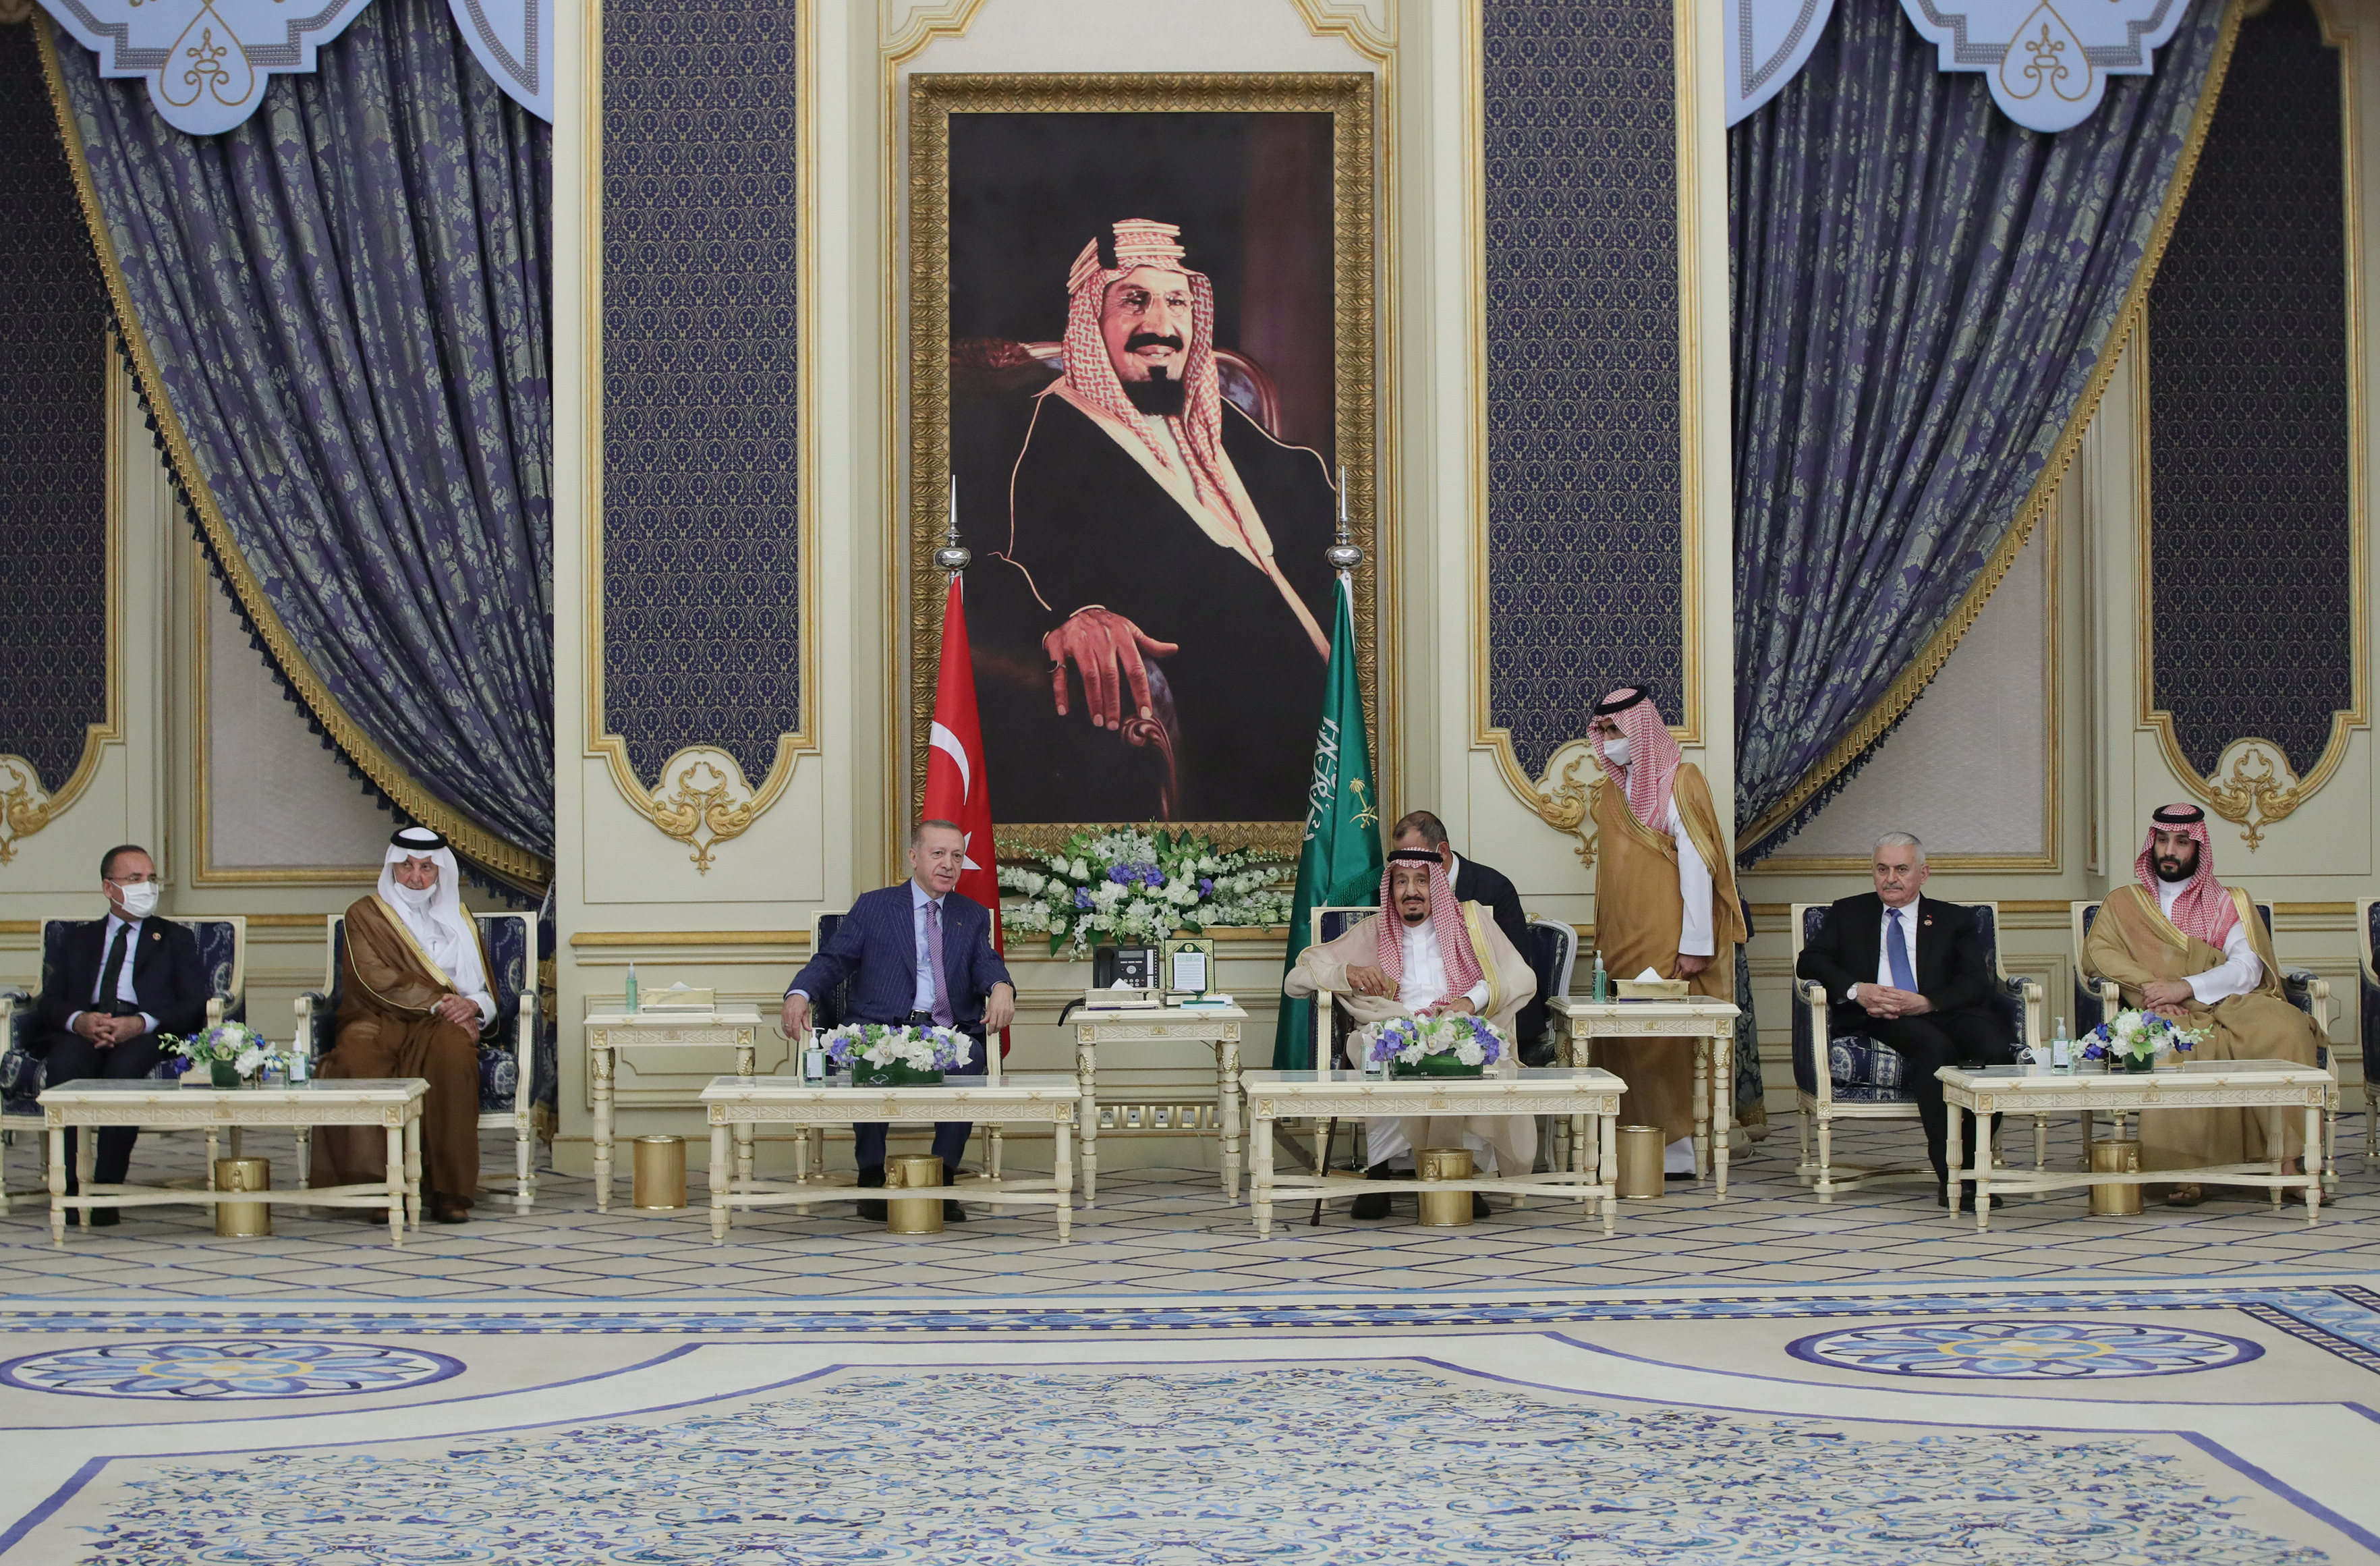  الرئيس التركي، رجب طيب أردوغان مع الملك سلمان بن عبدالعزيز (واس)